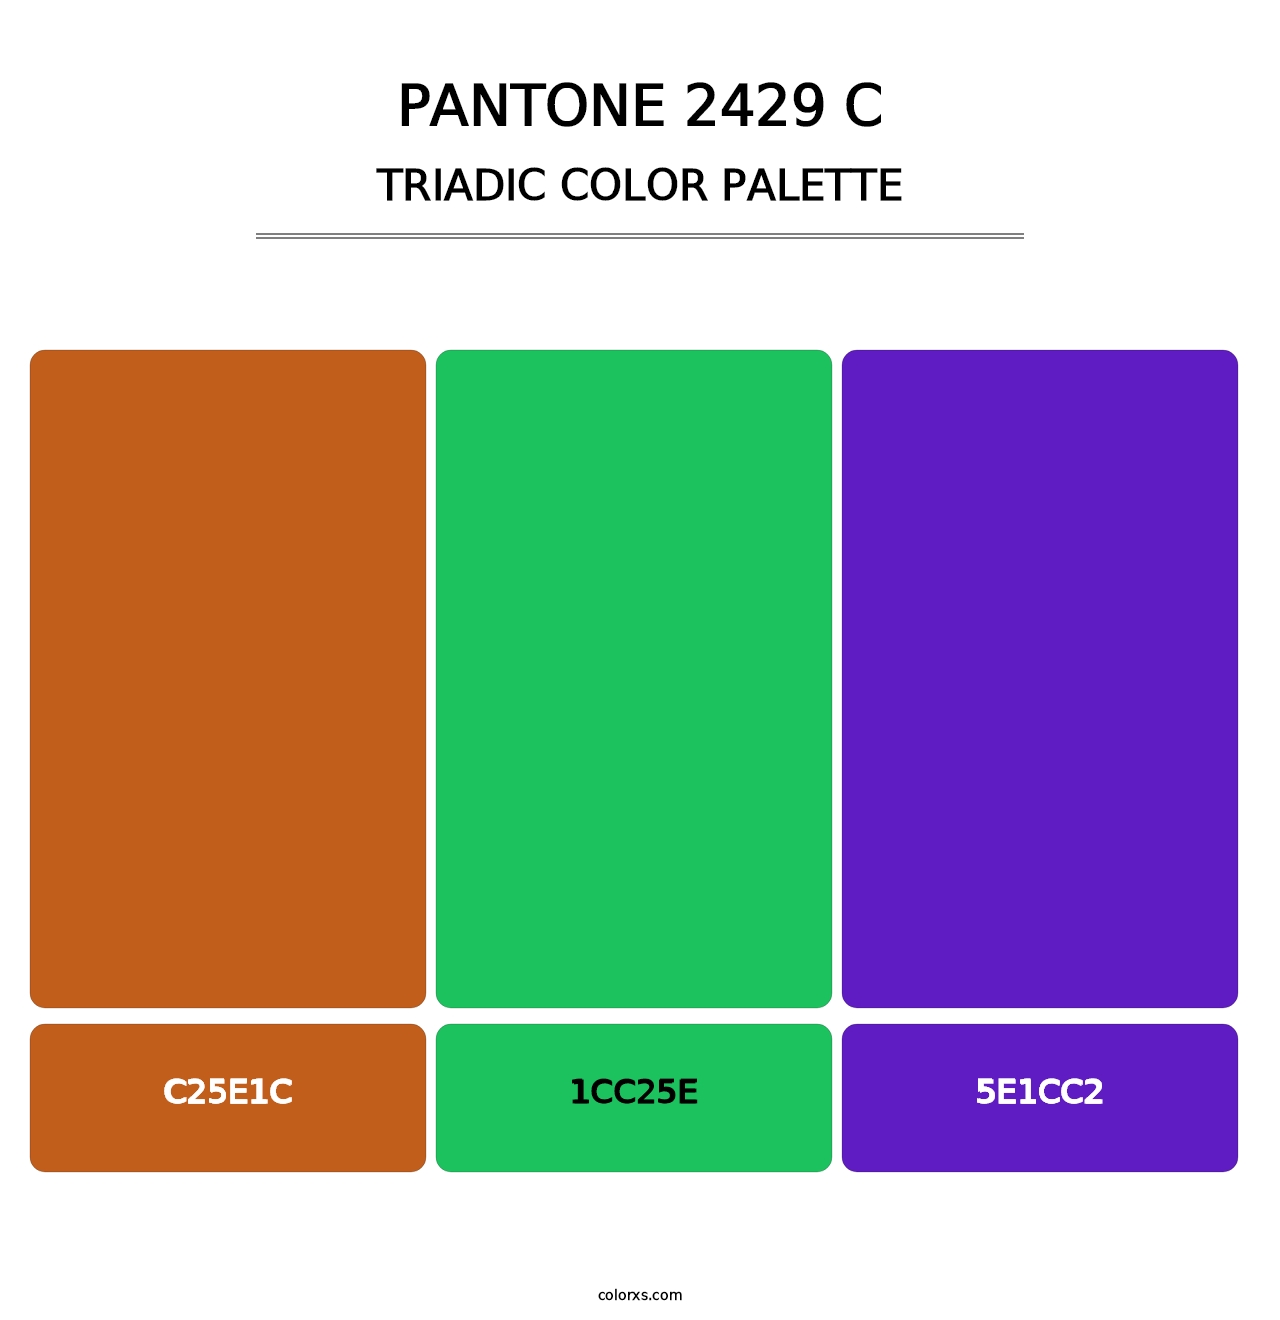 PANTONE 2429 C - Triadic Color Palette